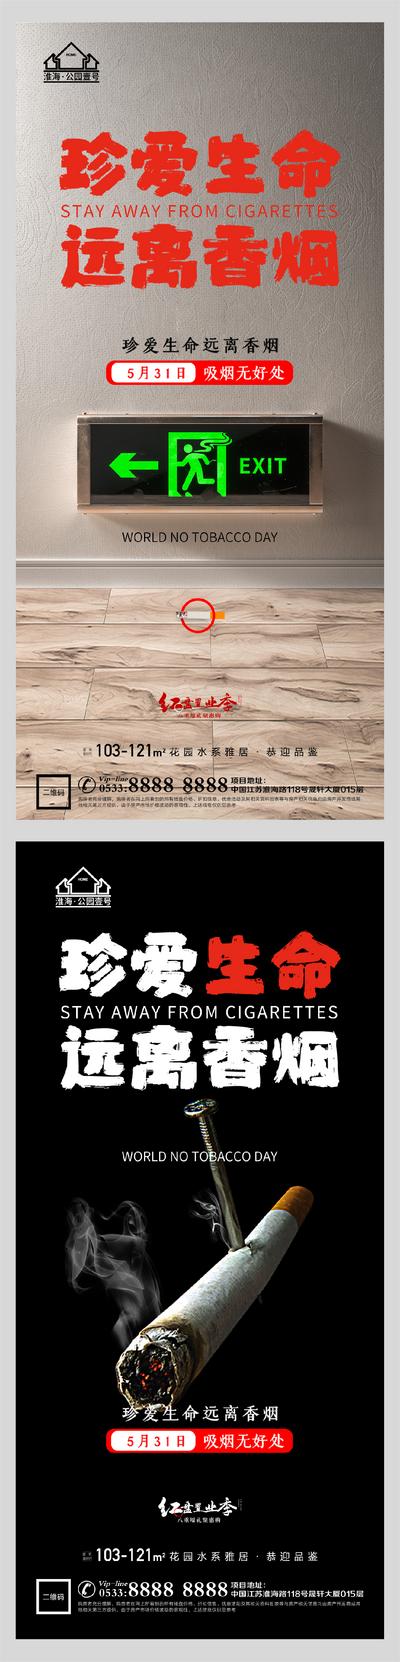 南门网 海报 地产 公历节日 世界无烟日 香烟 安全出口 创意